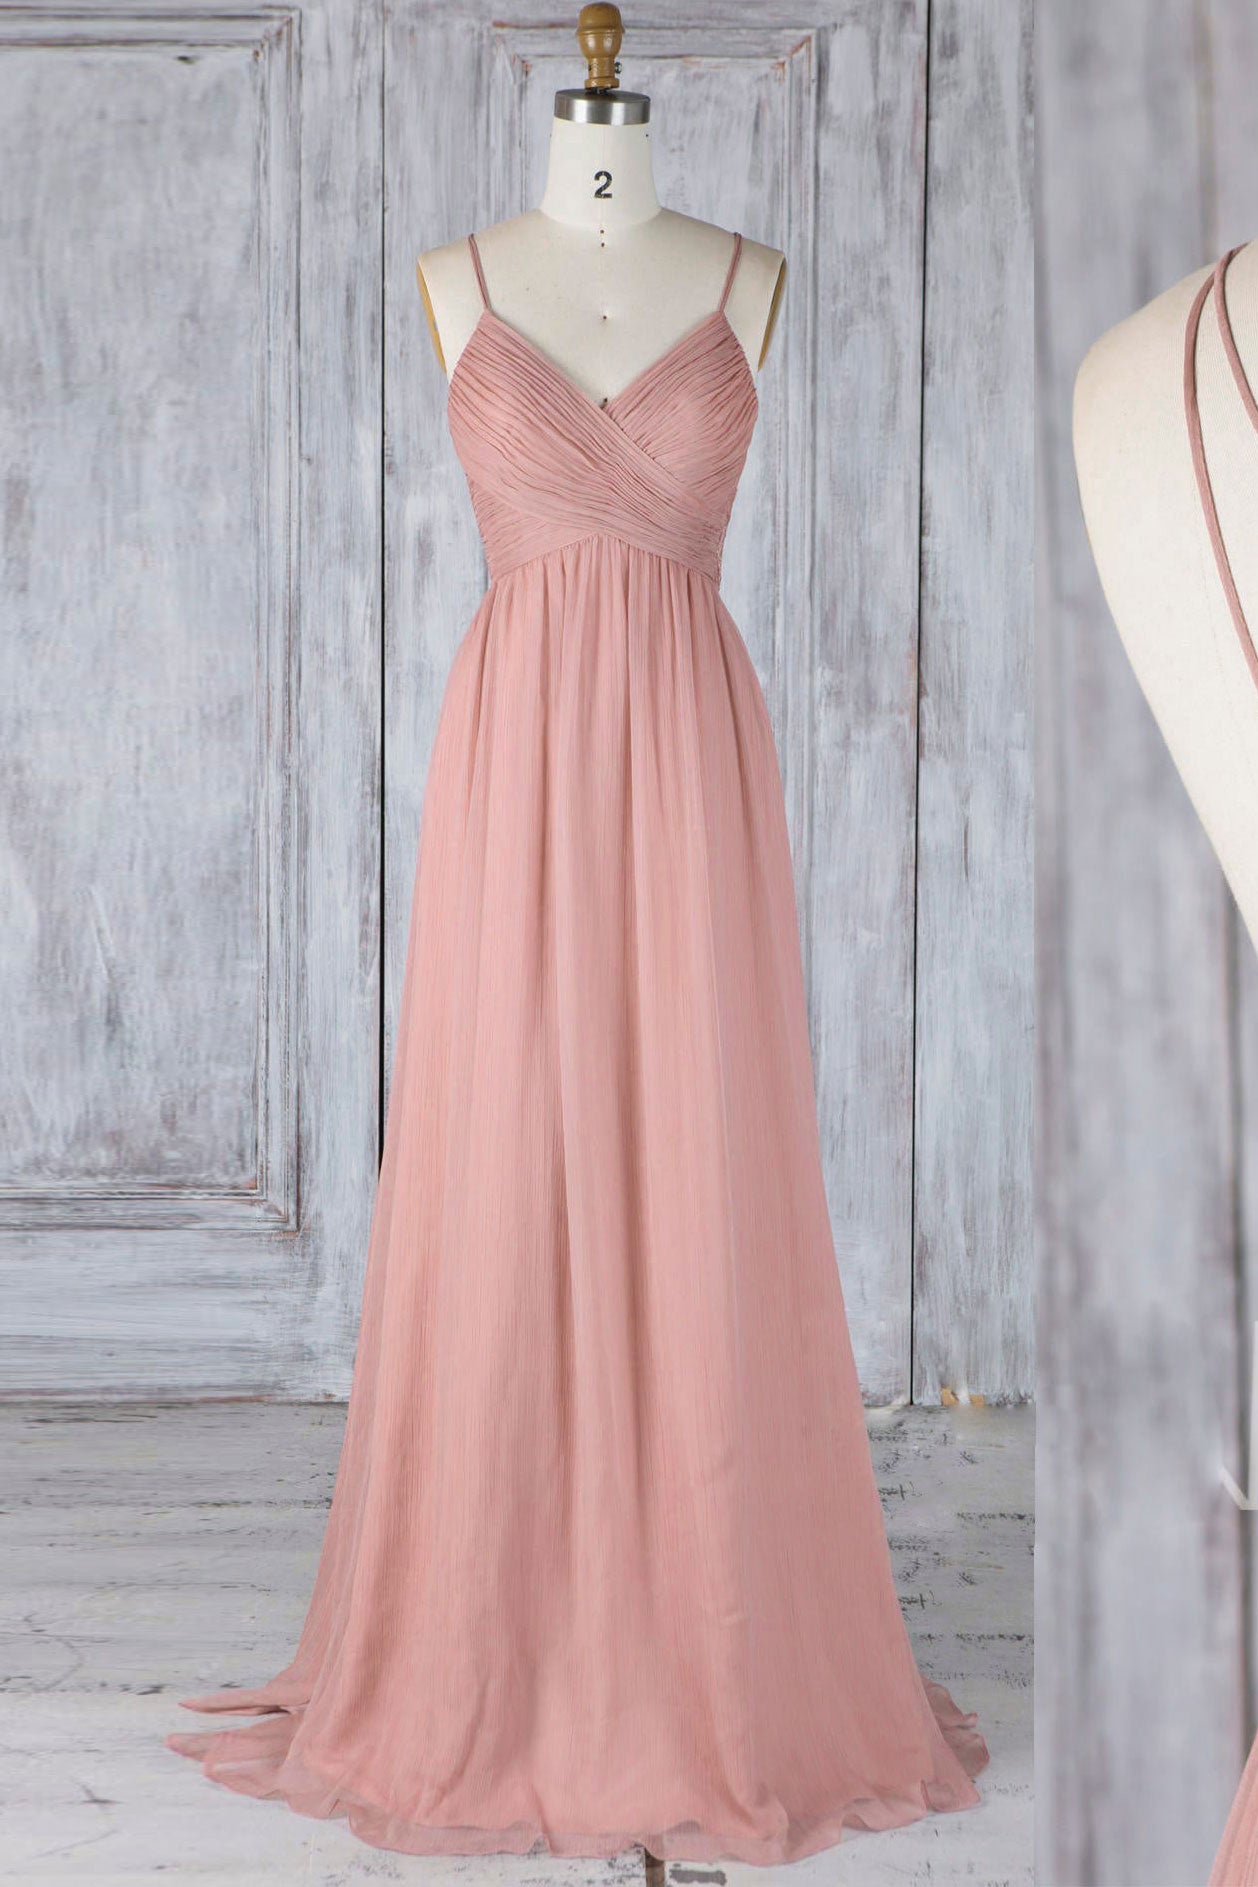 Pink Chiffon Lace Long Prom Dress Pink Lace Bridesmaid Dress Dresstby 